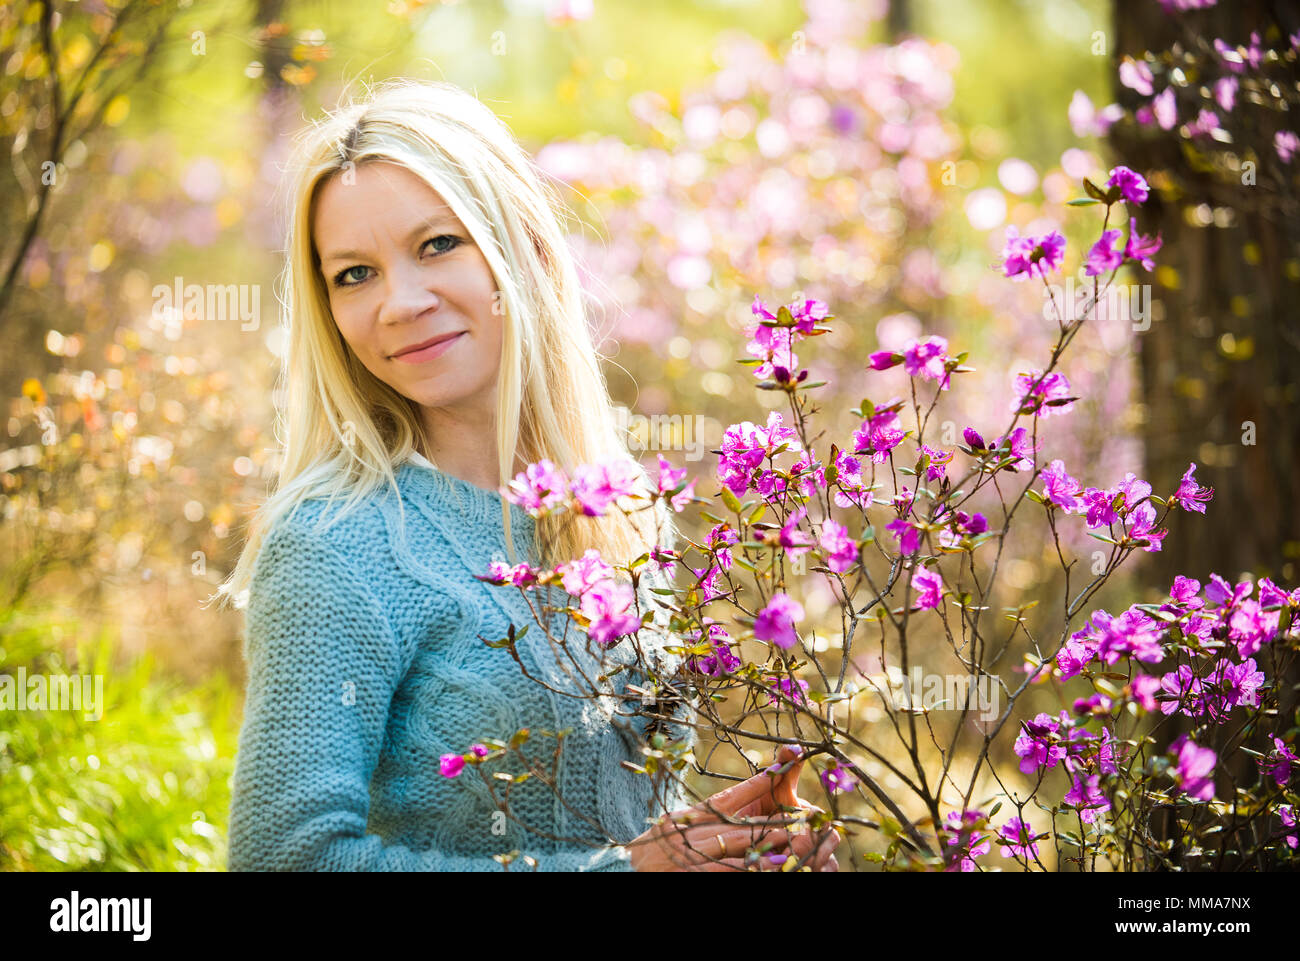 Ritratto di giovane donna bella in primavera sbocciano i fiori rosmarino nella foresta Foto Stock